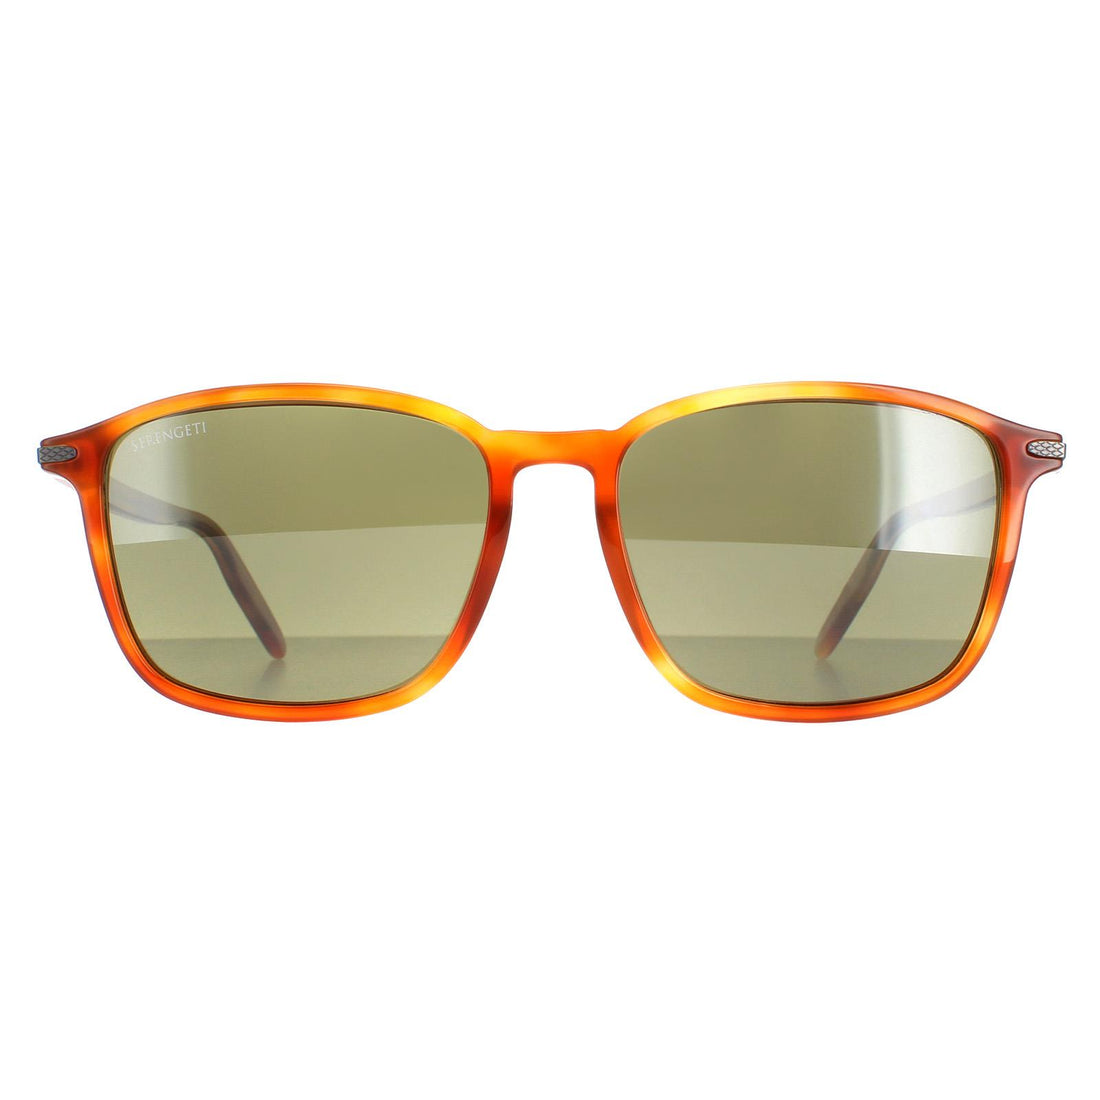 Serengeti Lenwood Sunglasses Shiny Caramel Mineral Polarized 555nm